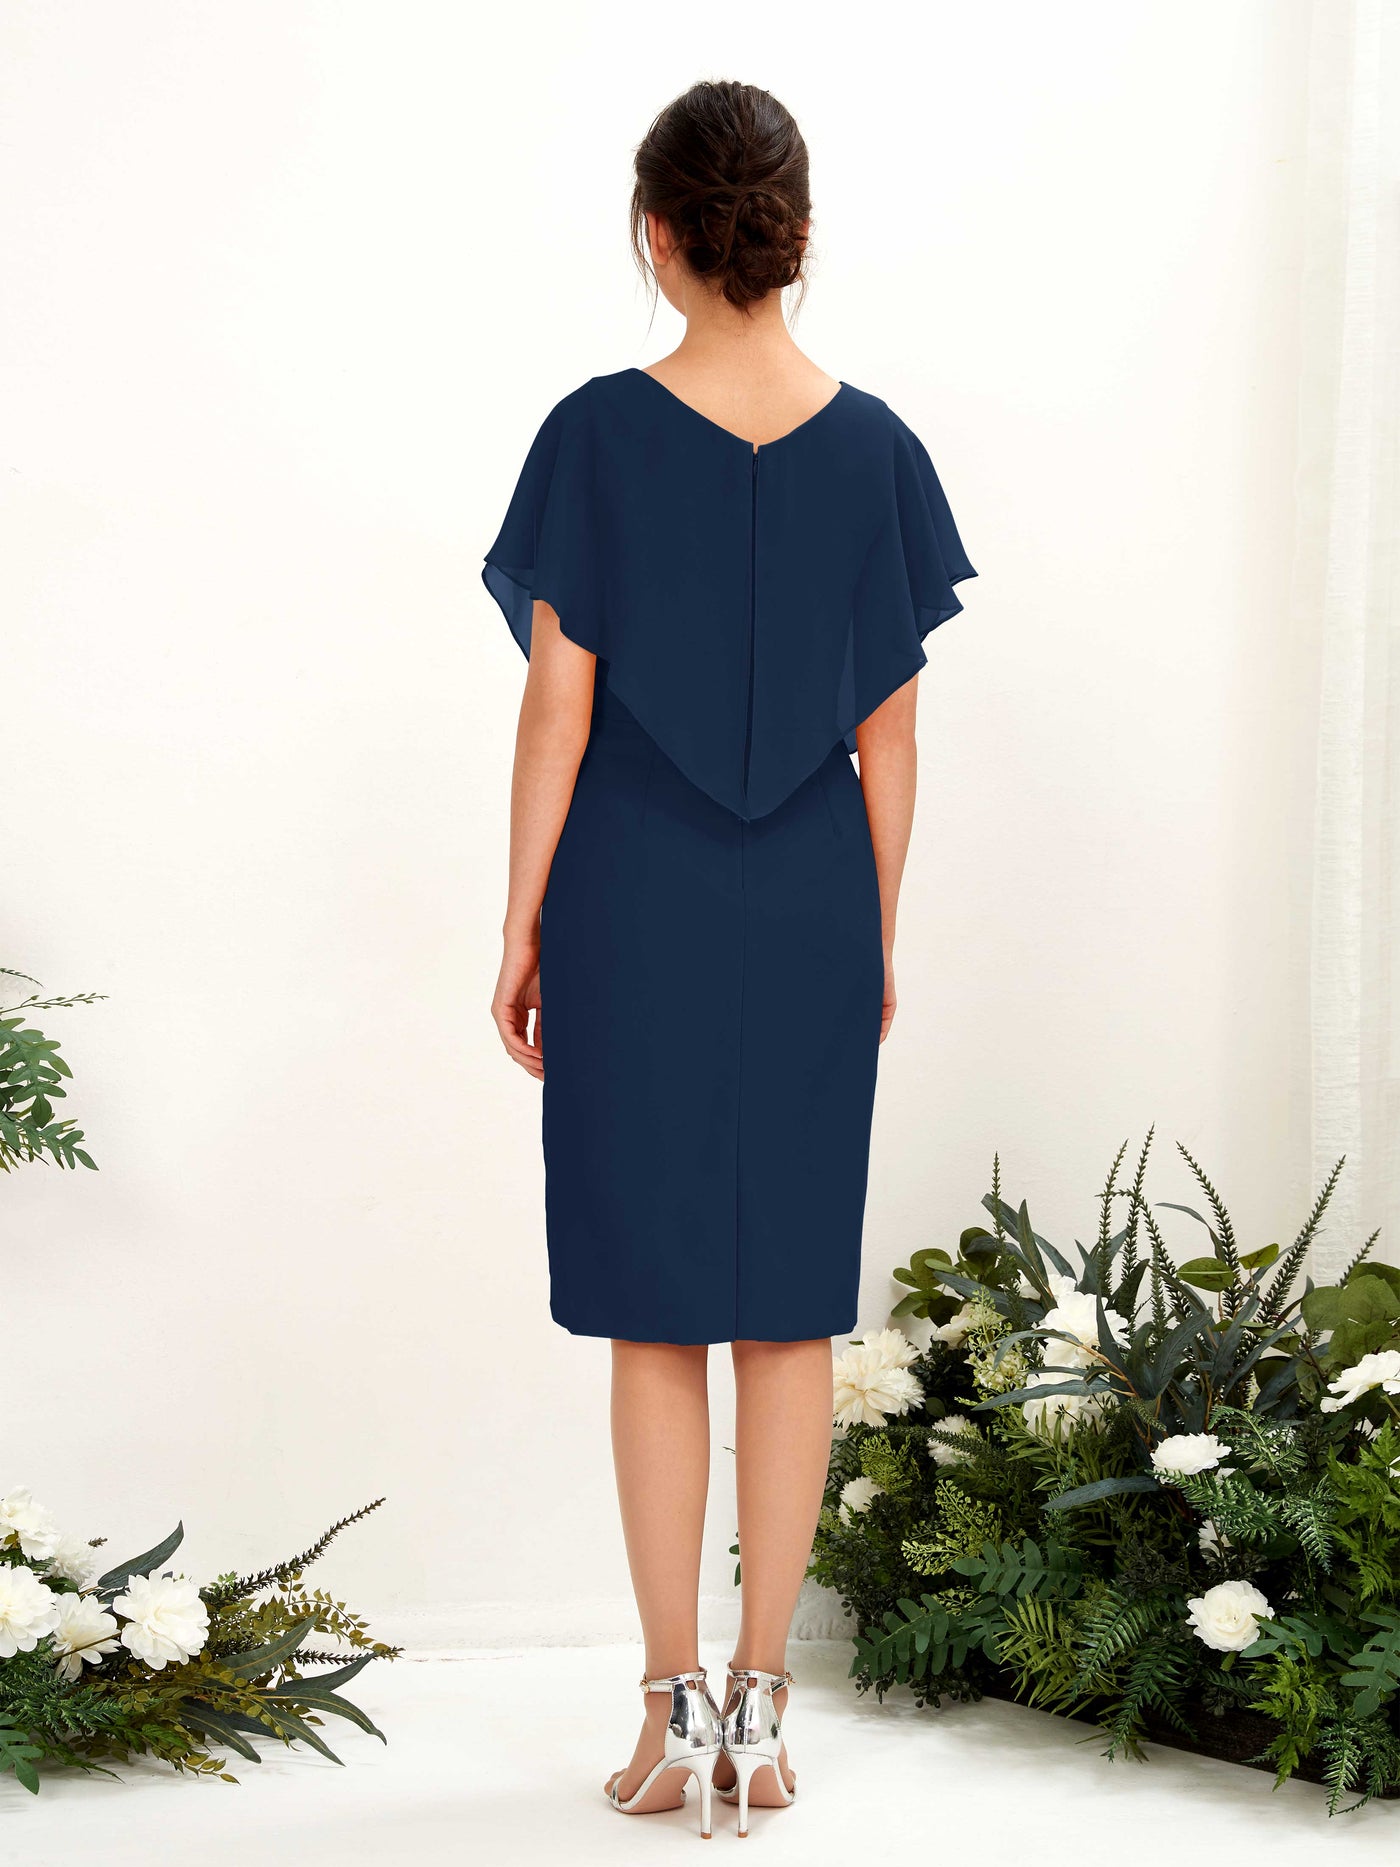 V-neck Short Sleeves Chiffon Bridesmaid Dress (81222213)#color_navy